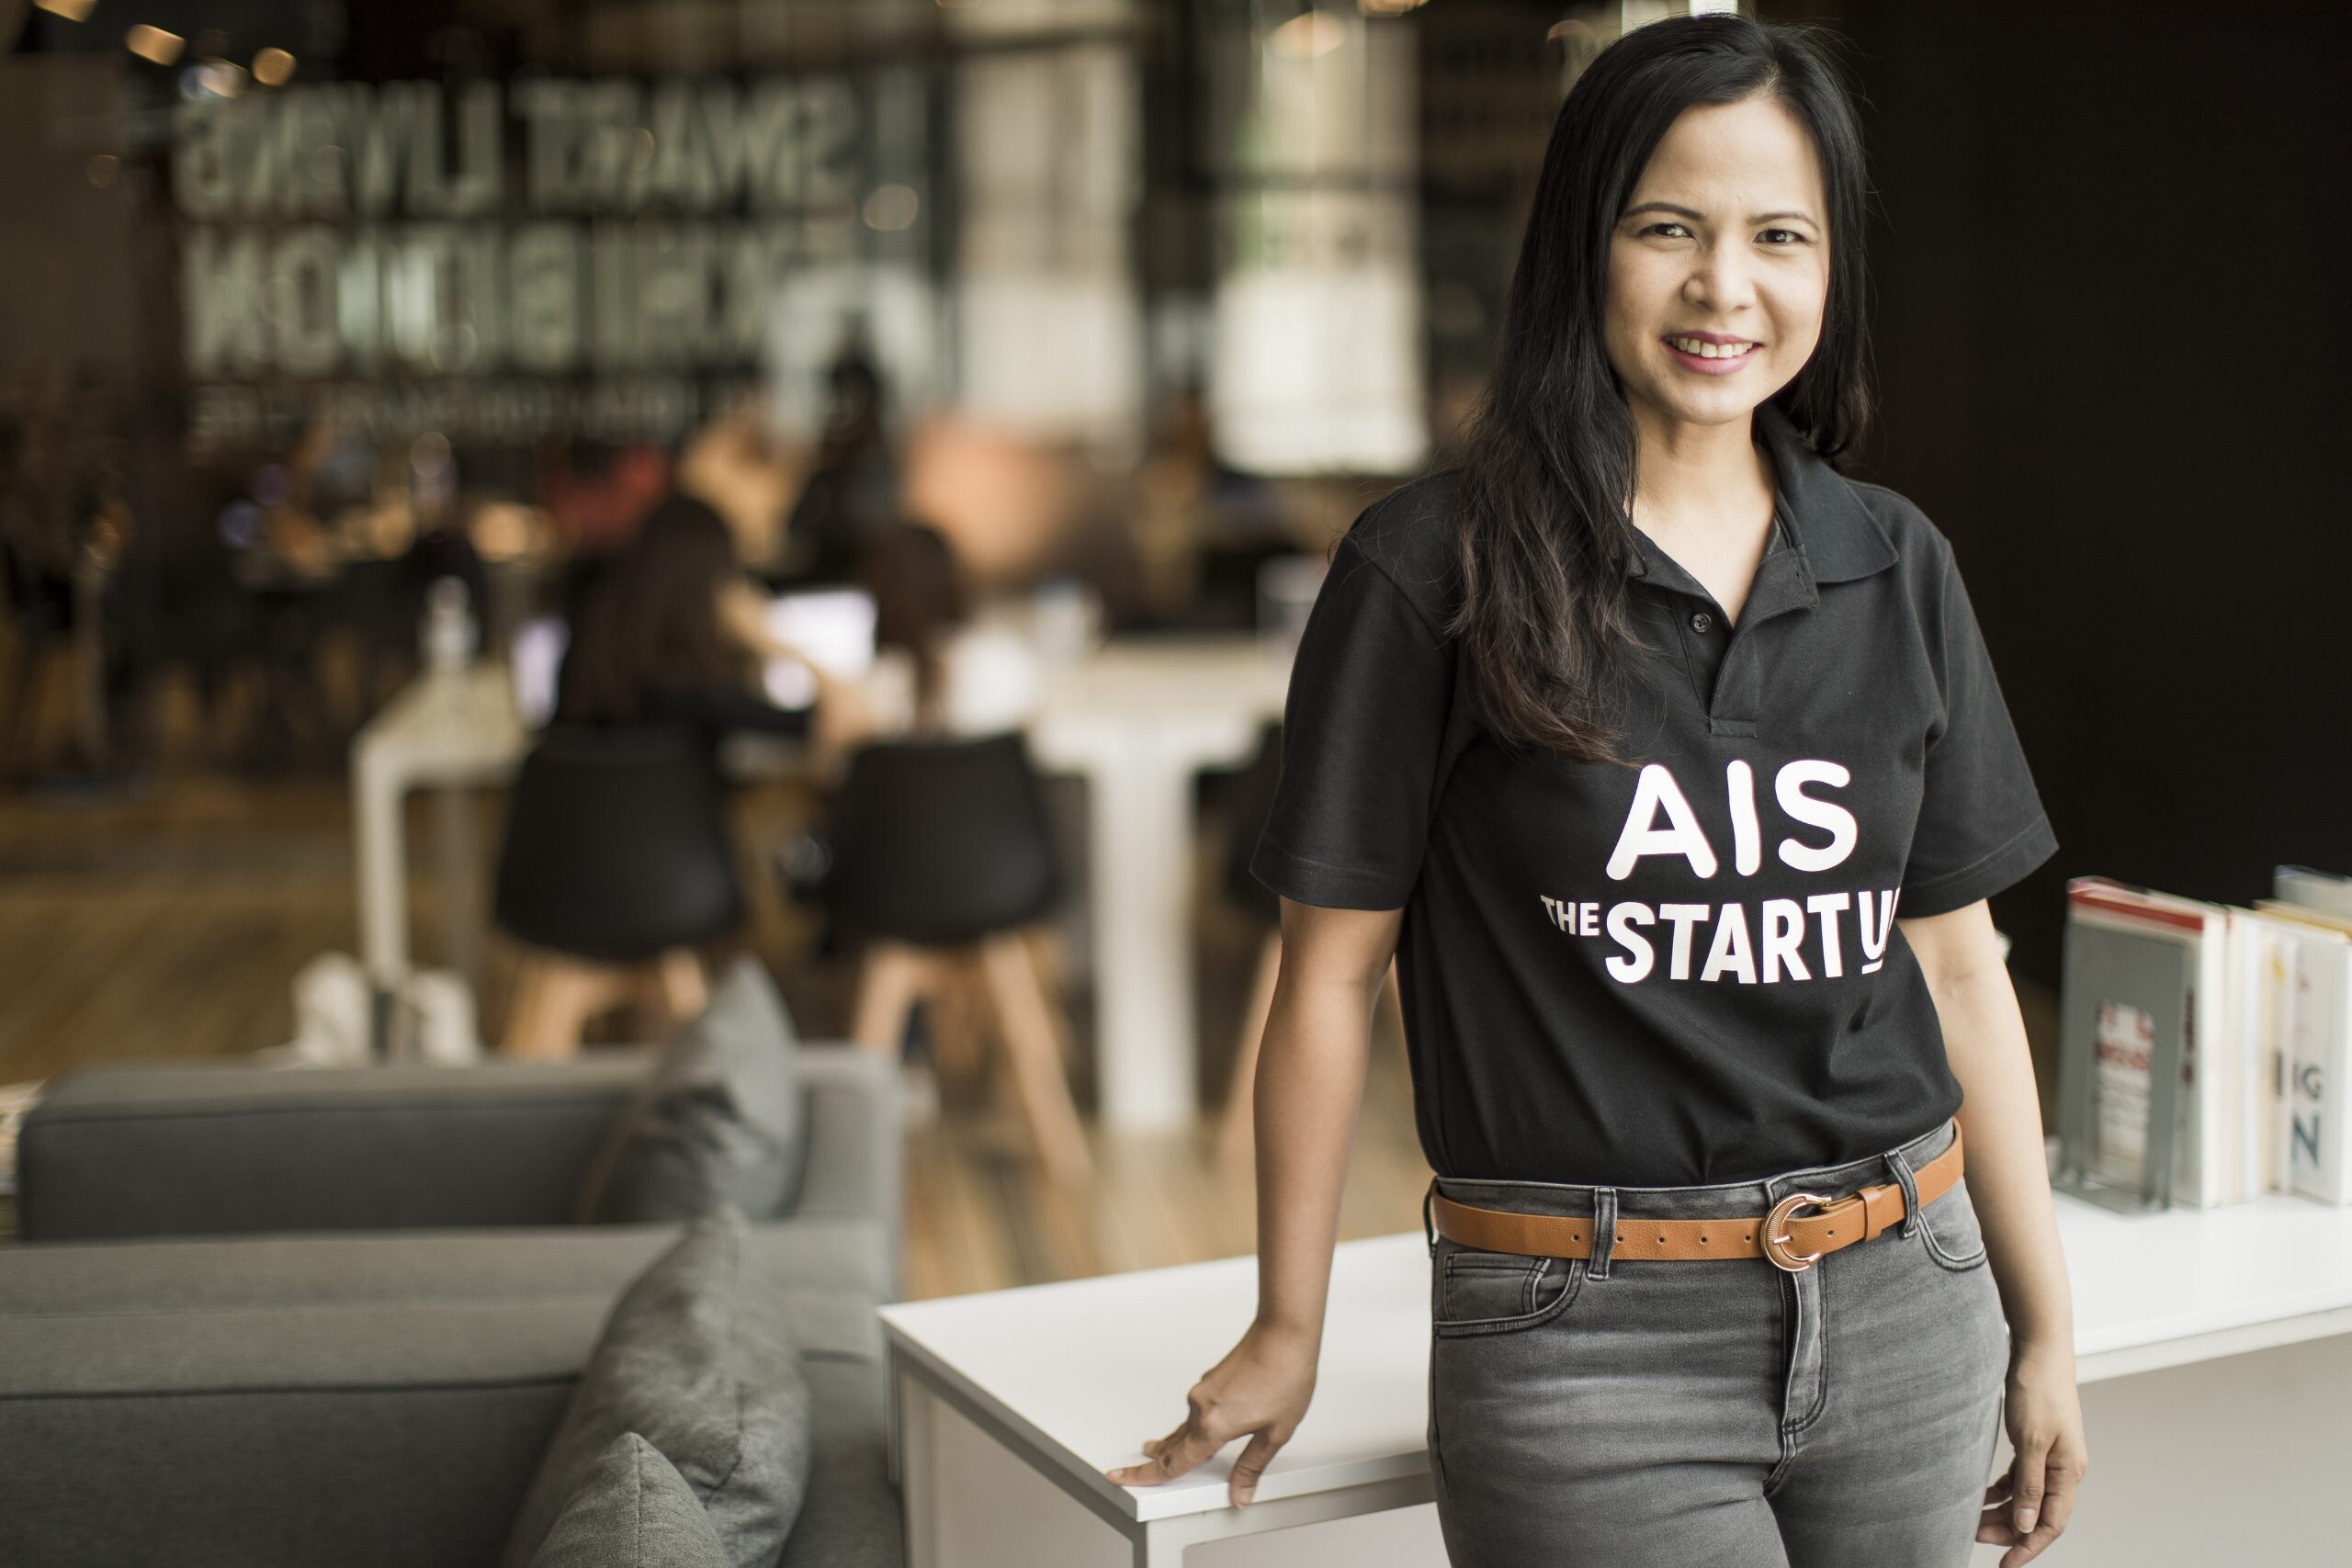 เอไอเอส หนุน Startup เติบโตอย่างยั่งยืนด้วยแนวคิด SDGs ผ่านโครงการ AIS-Singtel Group Future Makers โชว์ผลงาน StartUp สายสุขภาพสัญชาติไทย Agnos คว้ารางวัลชนะเลิศ